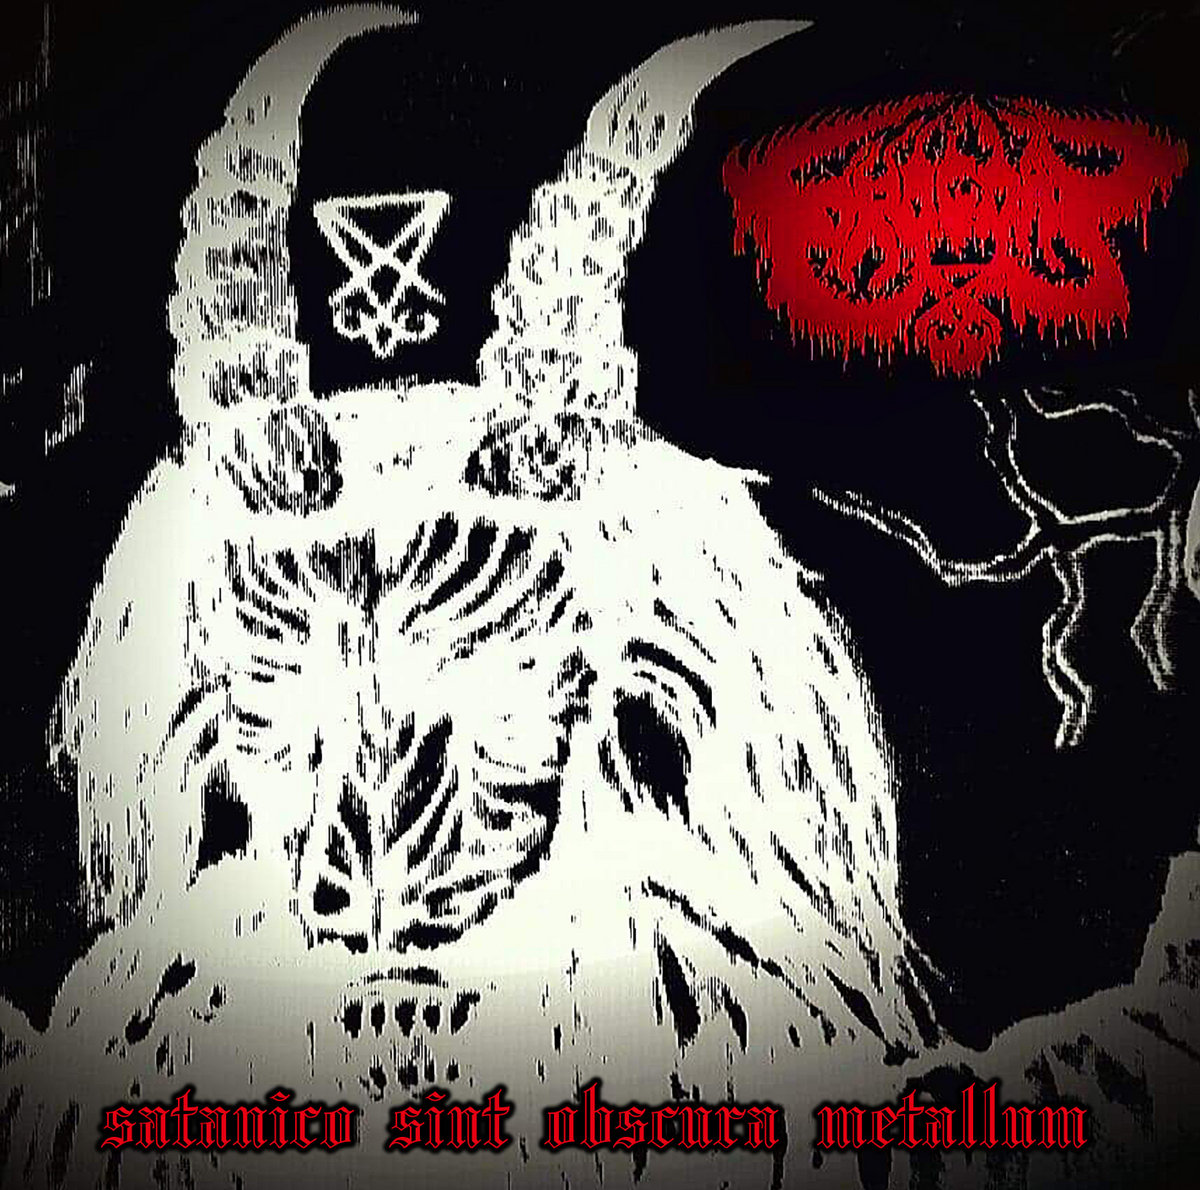 Satanico Sint Obscura Metallum